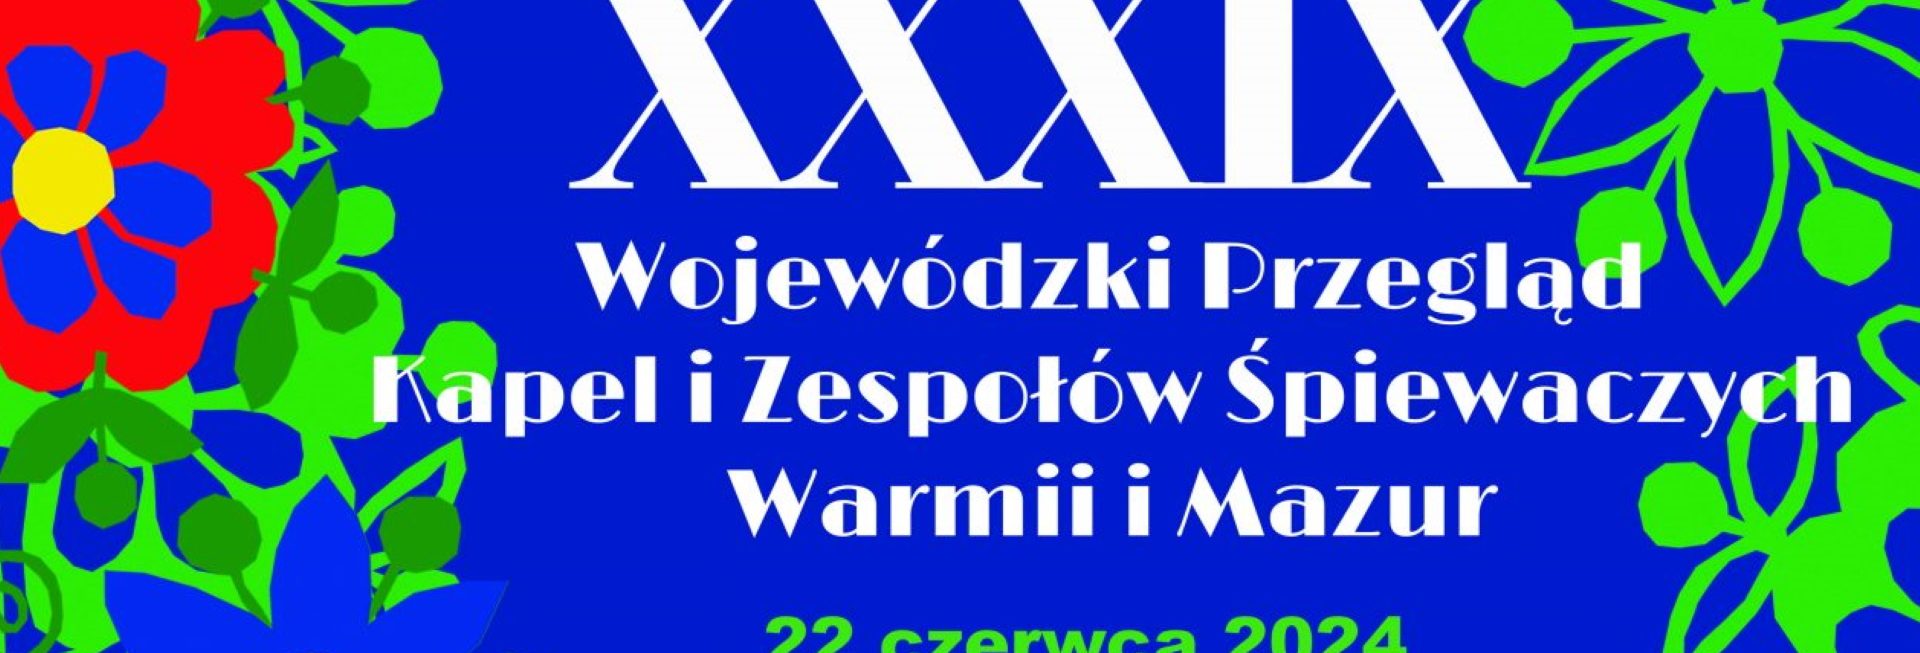 Plakat zapraszający w sobotę 22 czerwca 2024 r. do Jezioran na 39. edycję Wojewódzkiego Przeglądu Kapel i Zespołów Śpiewaczych Warmii i Mazur Jeziorany 2024.